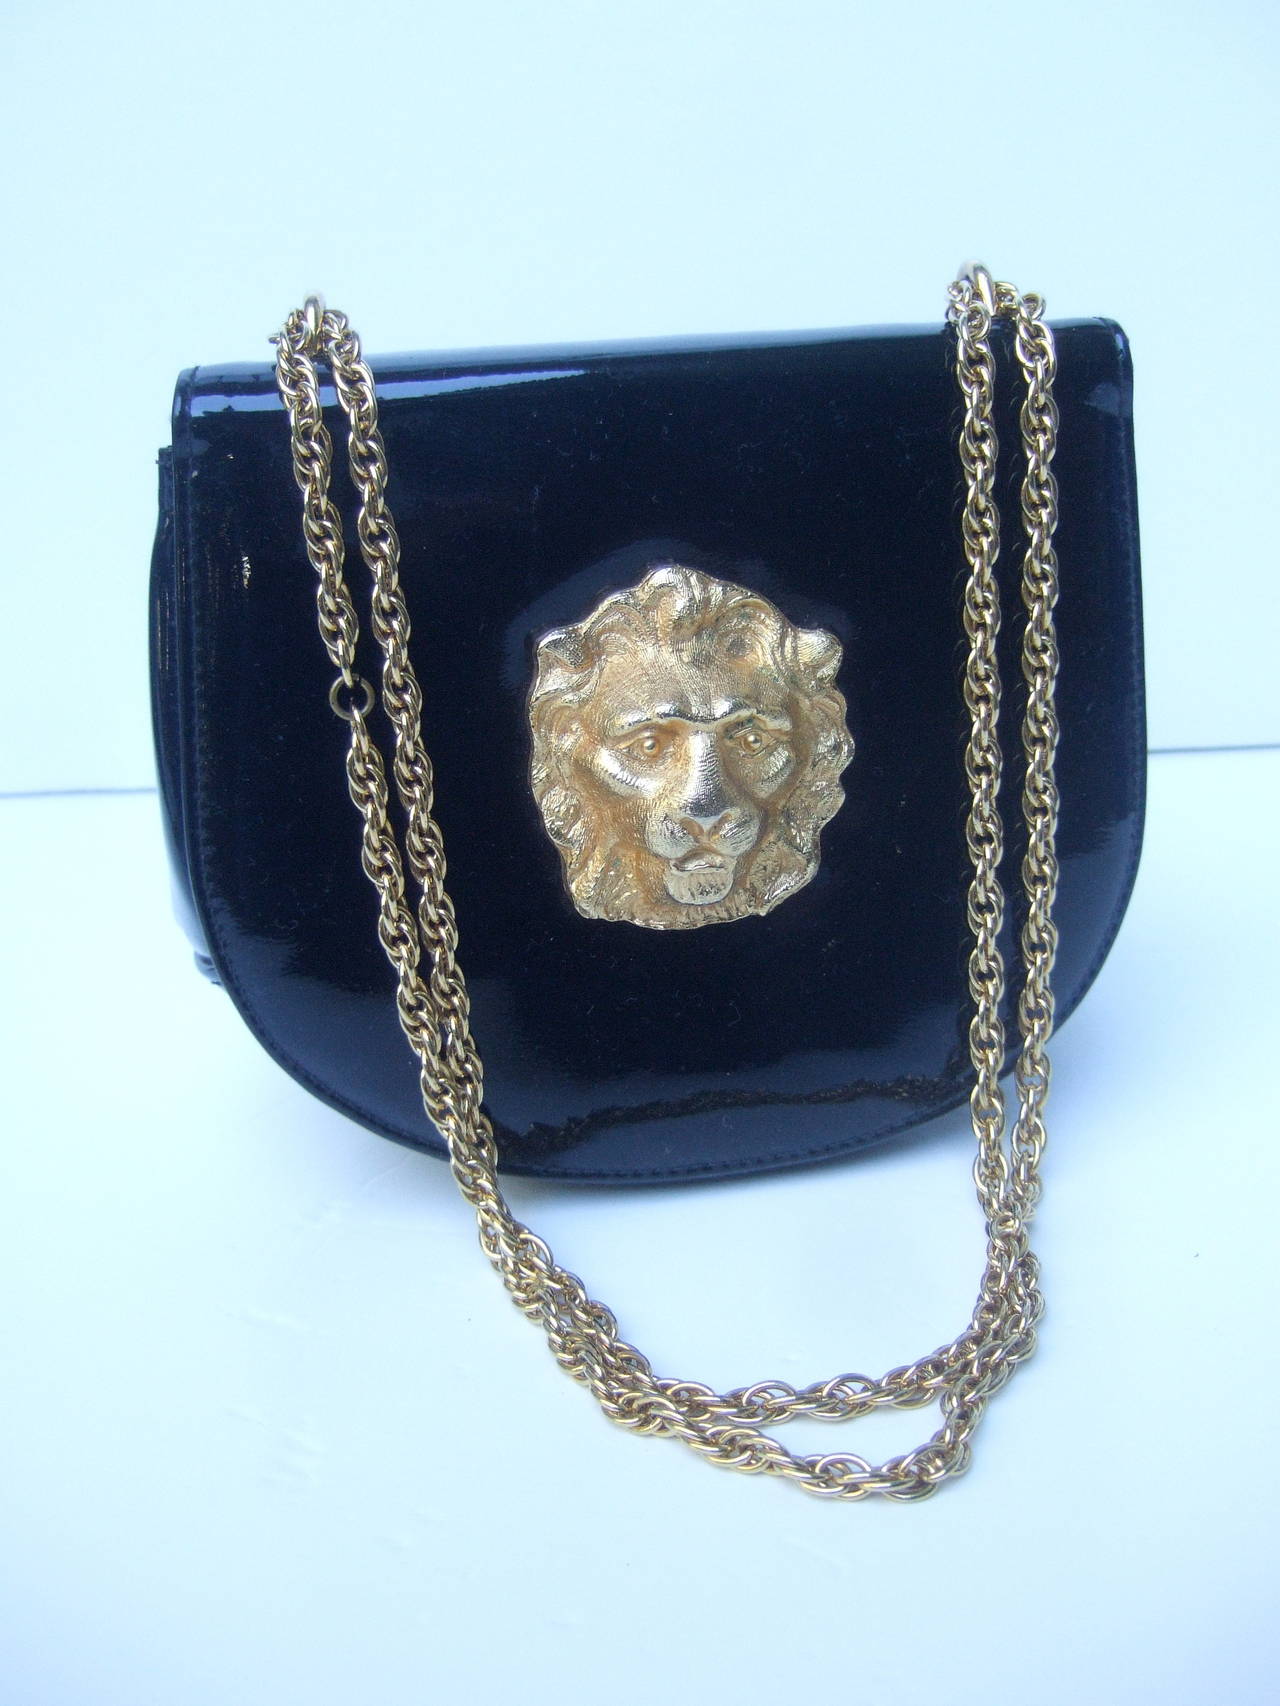 purse with lion emblem